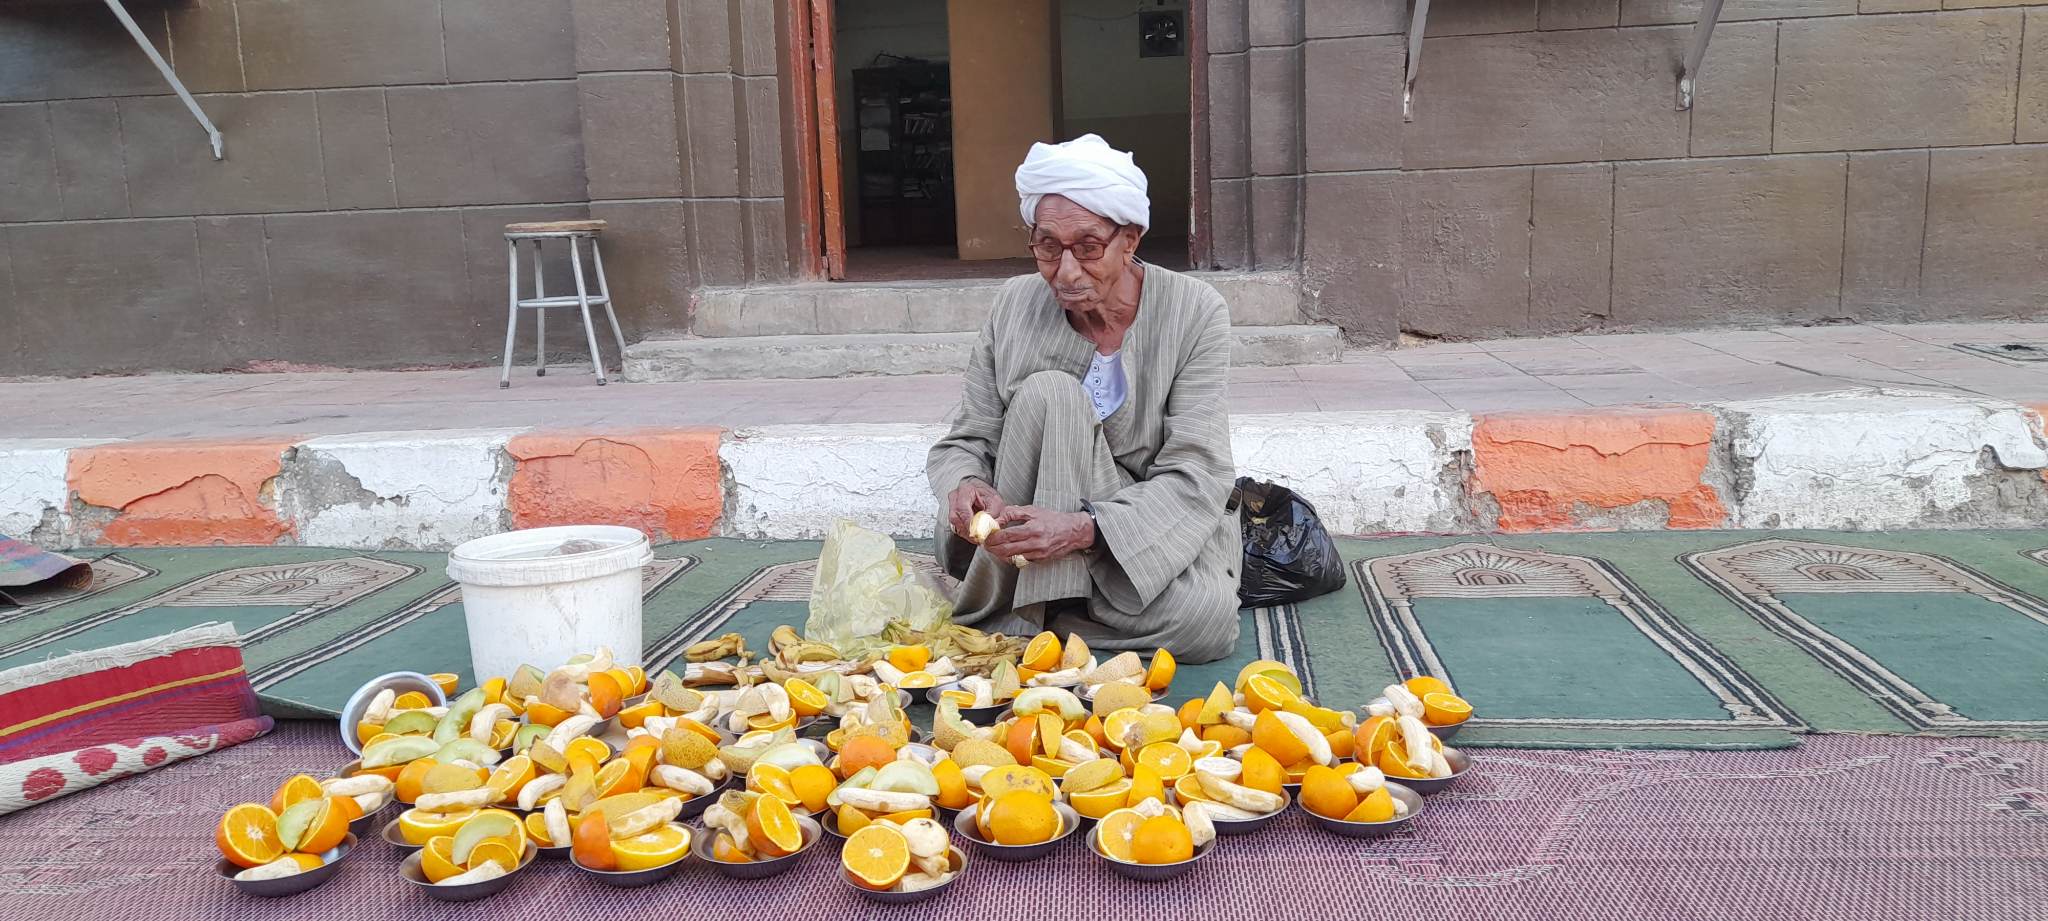 العم فاروق محمد 45 عاما في تجهيز اطباق الفاكهة للصائمين